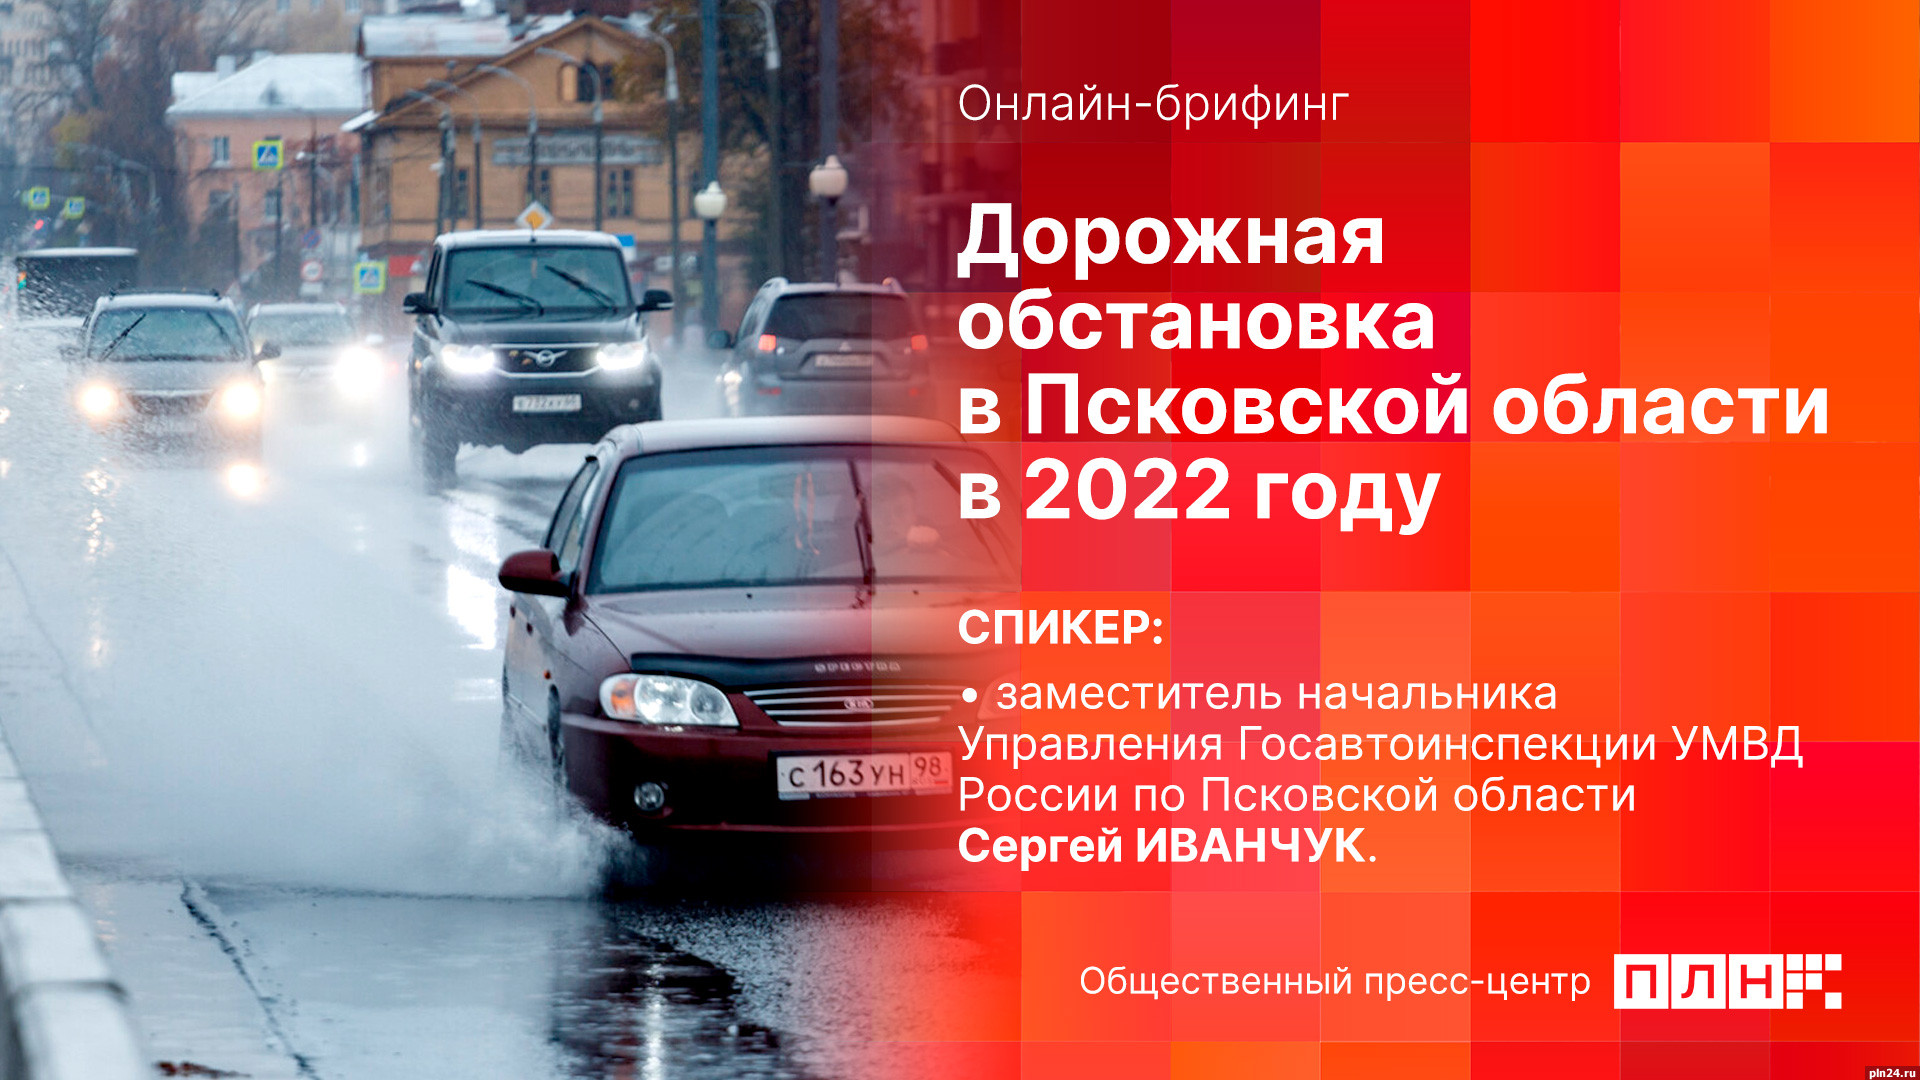 Начинается видеотрансляция онлайн-брифинга о дорожной обстановке в Псковской области в 2022 году